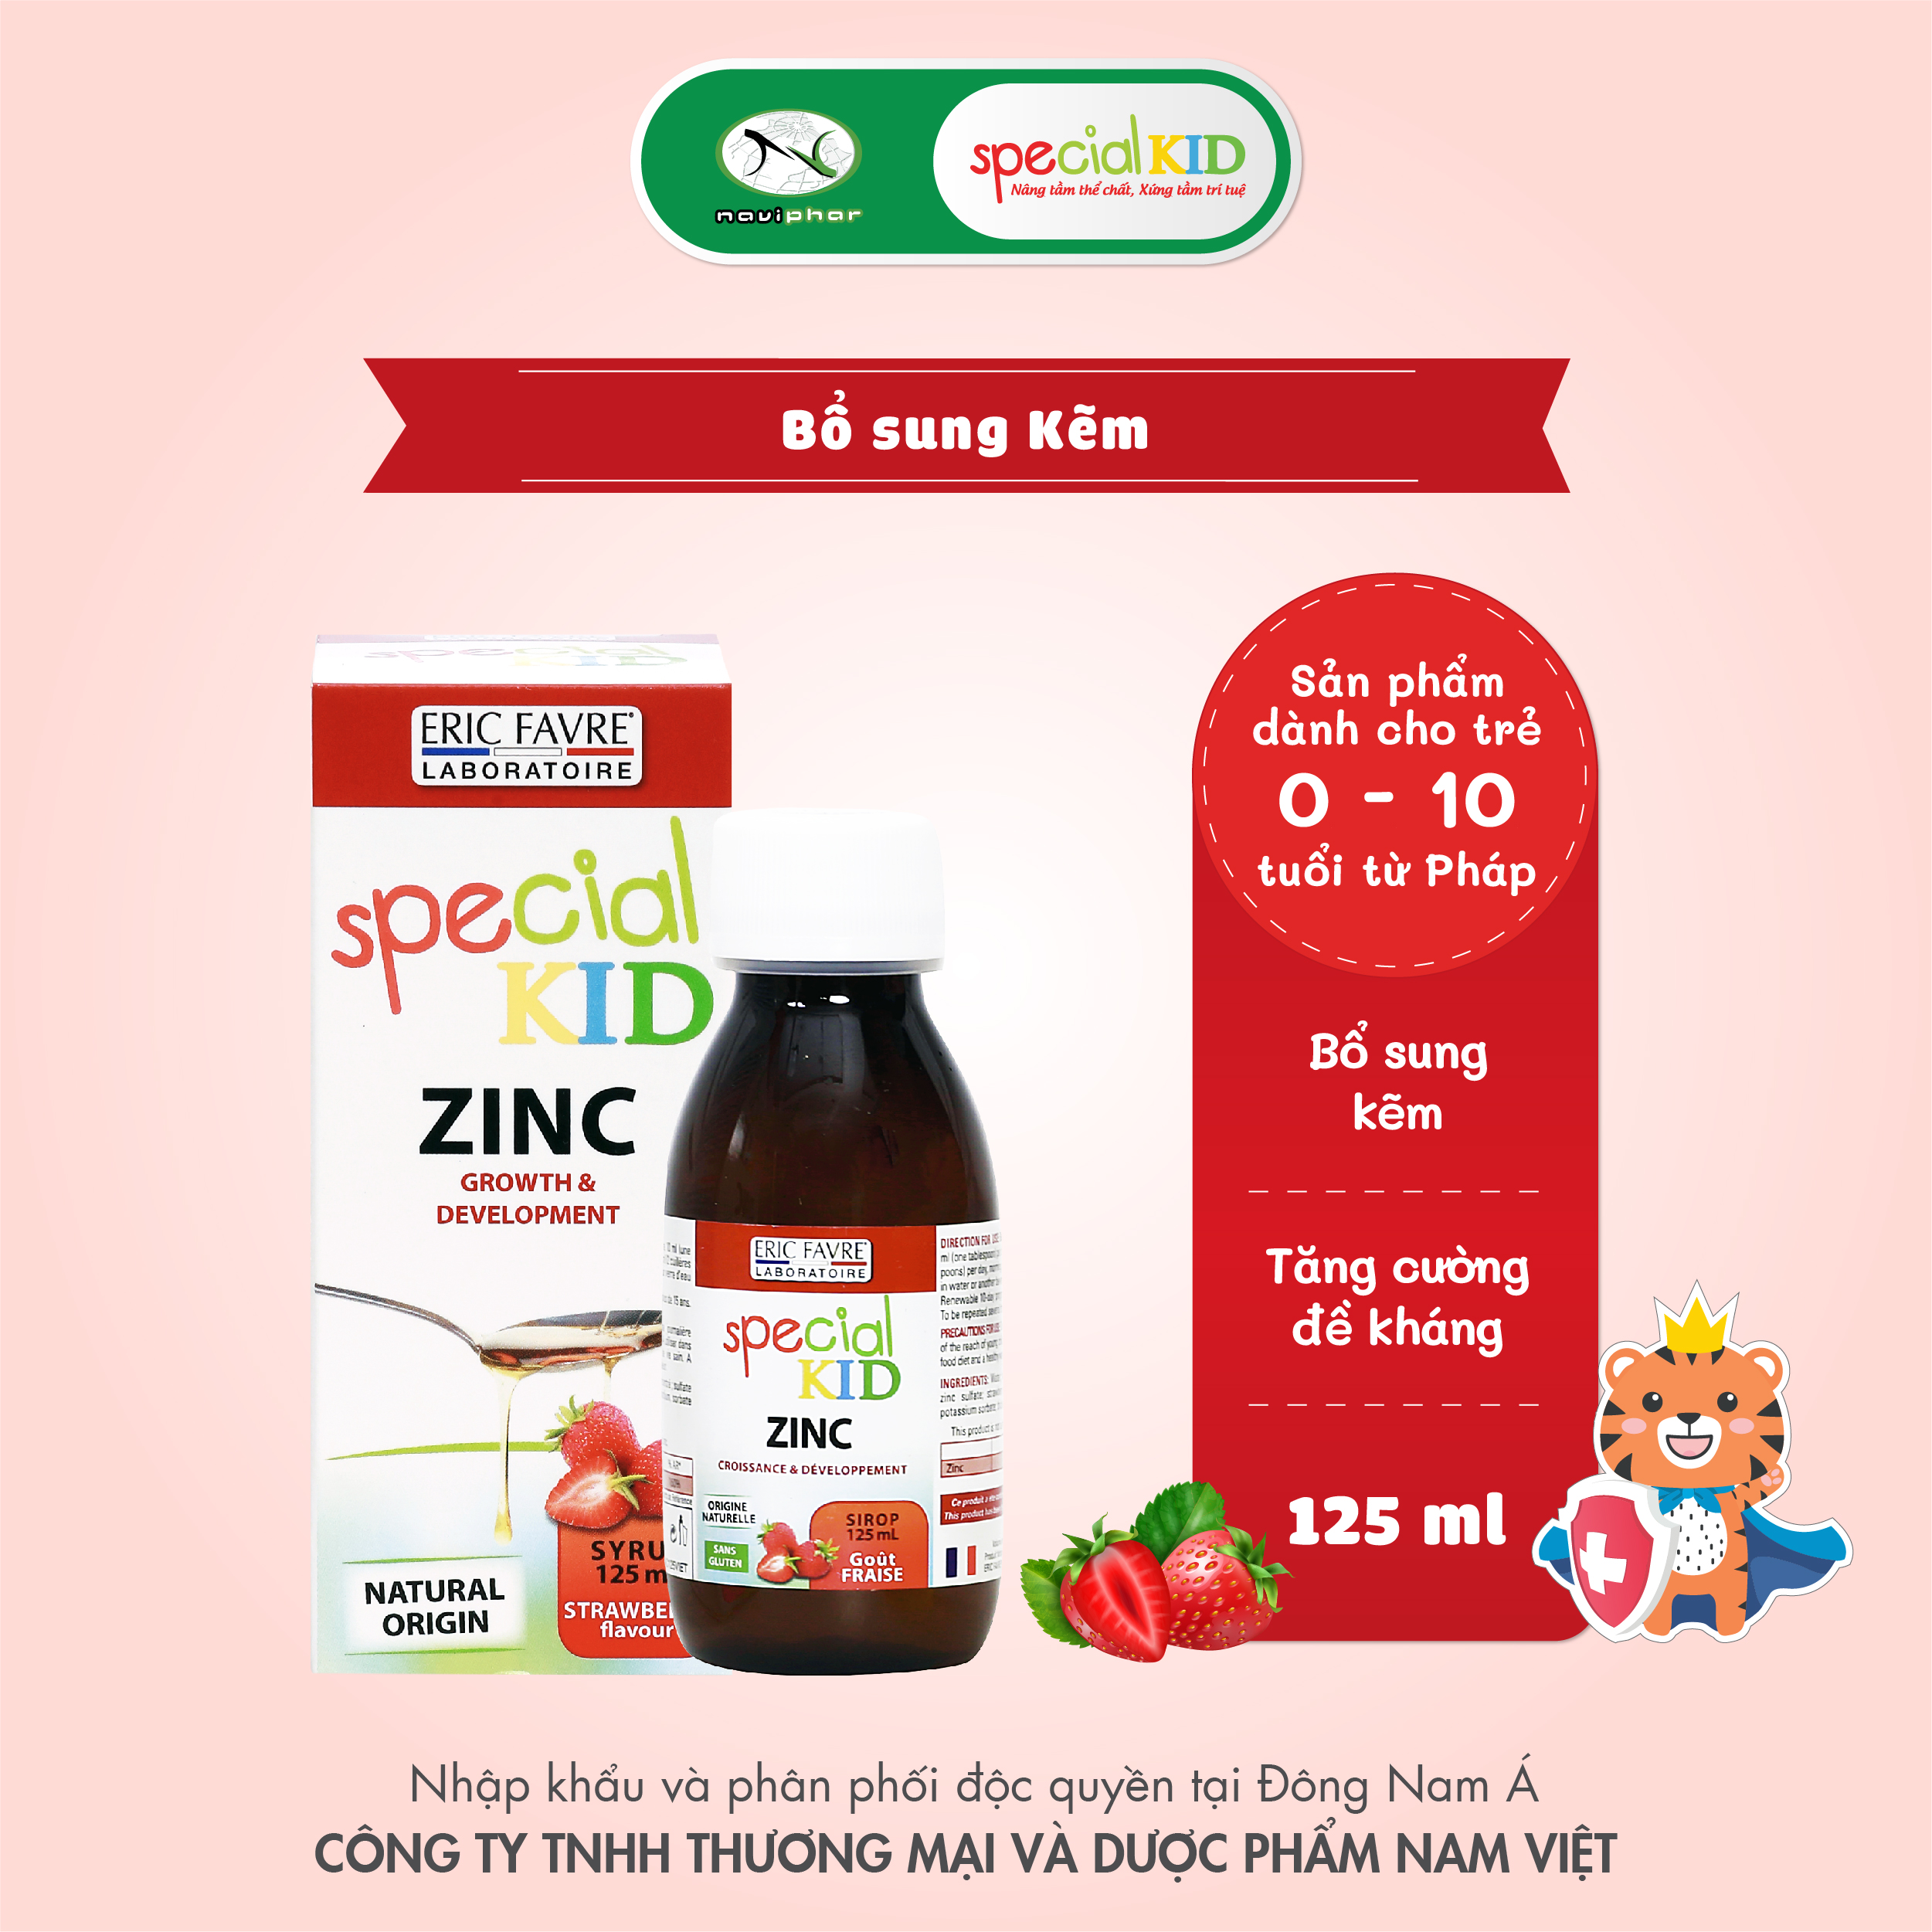 TPBVSK Special Kid Zinc - Bổ sung Kẽm cho cơ thể, hỗ trợ tăng cường sức đề kháng (125ml) [Siro – Nhập khẩu Pháp]